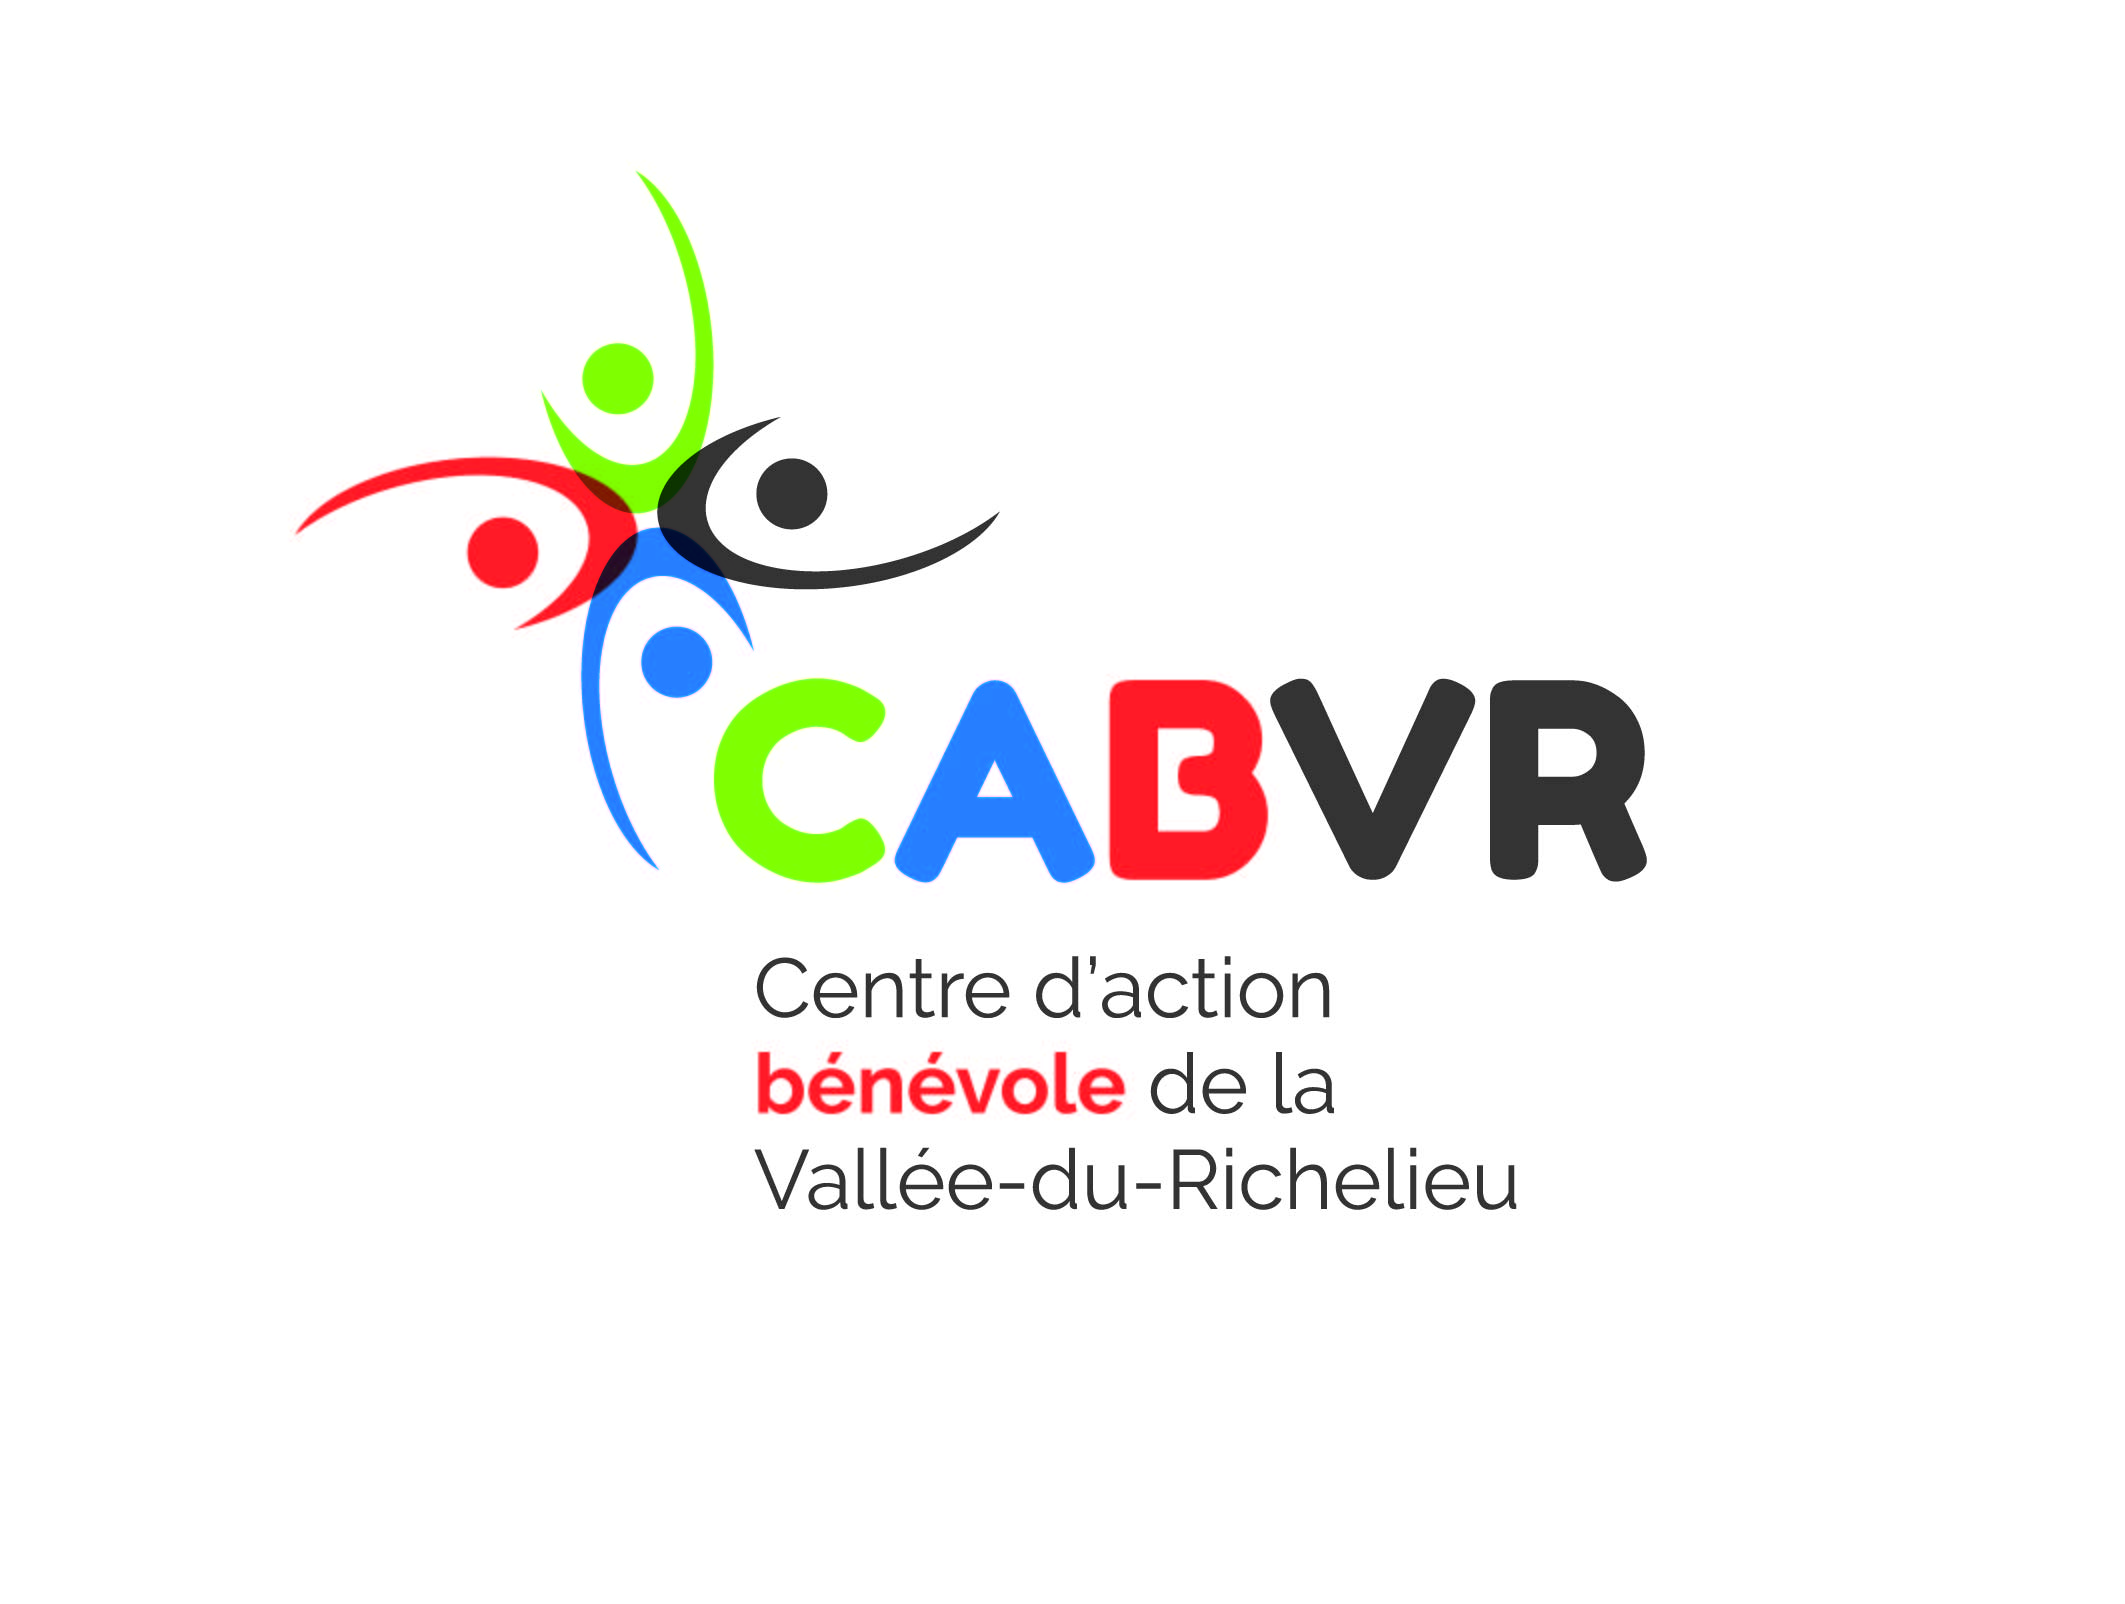 Centre d'action bénévole de la Vallée-du-Richelieu (CABVR)